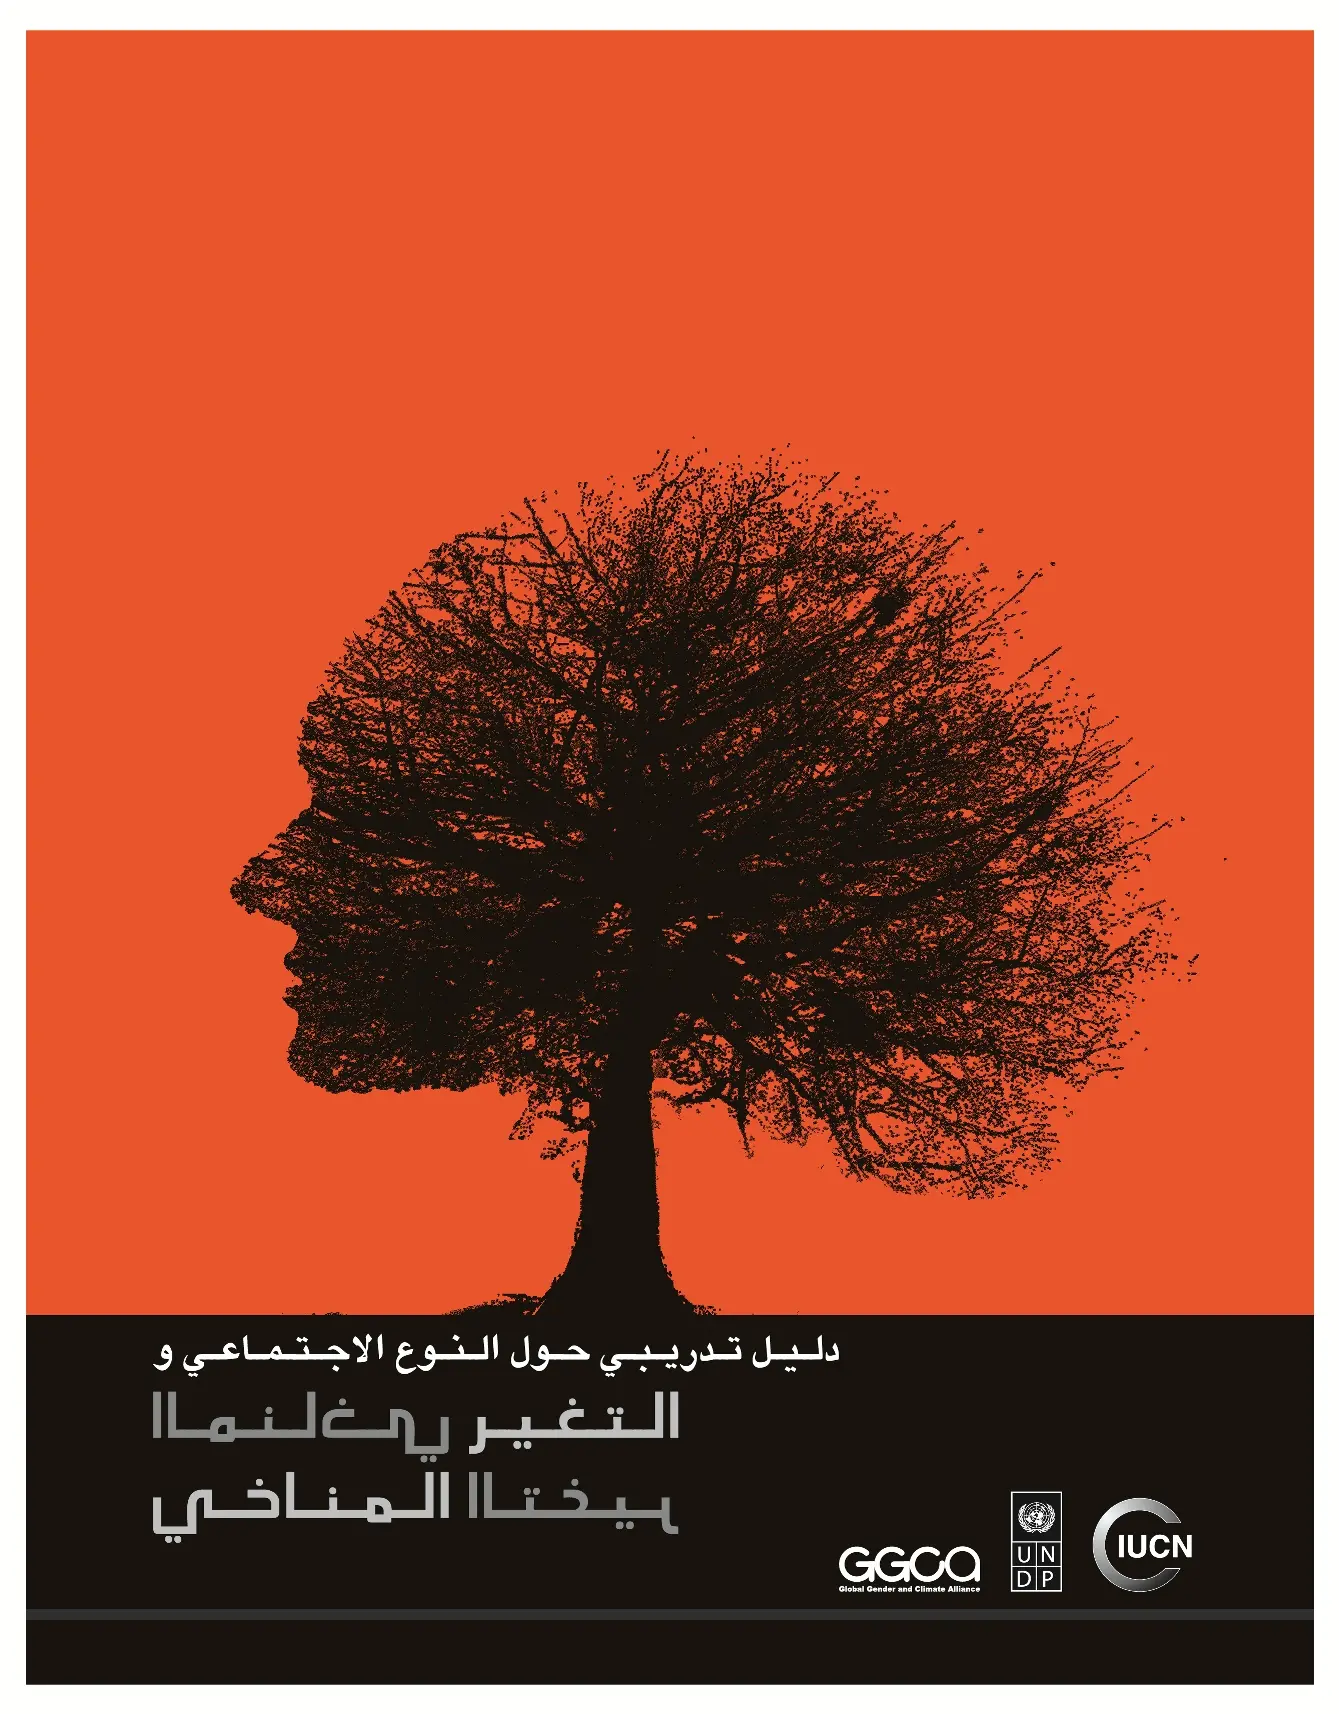 الدليل التدريبي للنوع الاجتماعي والتغير المناخي 
Gender and Climate Change Manual Arabic